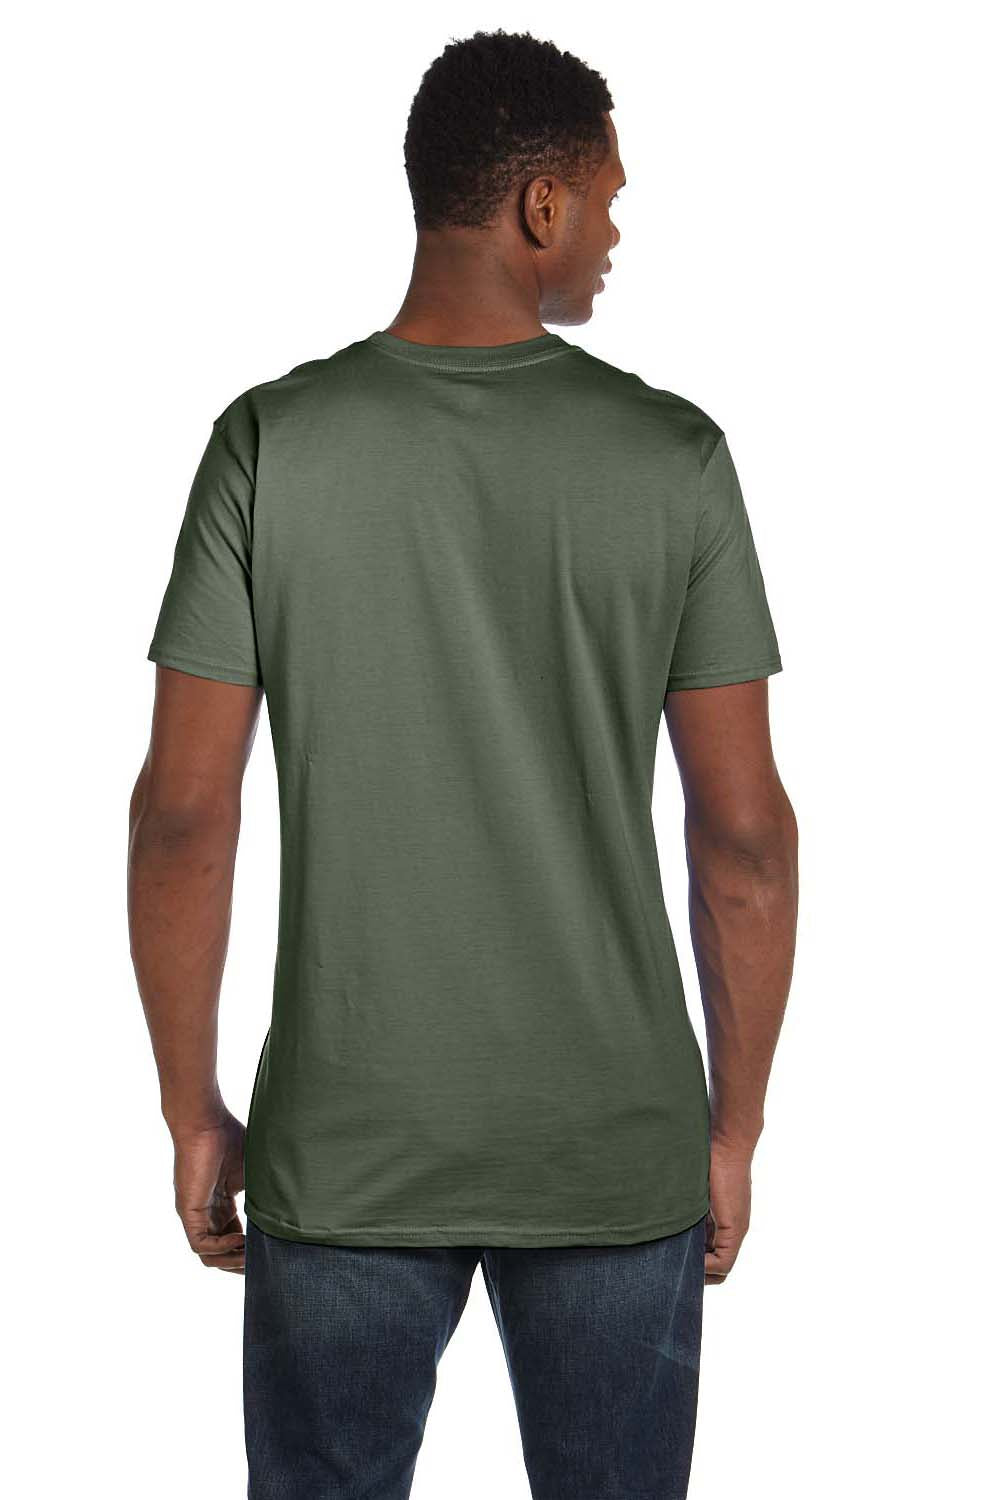 Hanes 4980 Mens Nano-T Short Sleeve Crewneck T-Shirt Fatigue Green Back